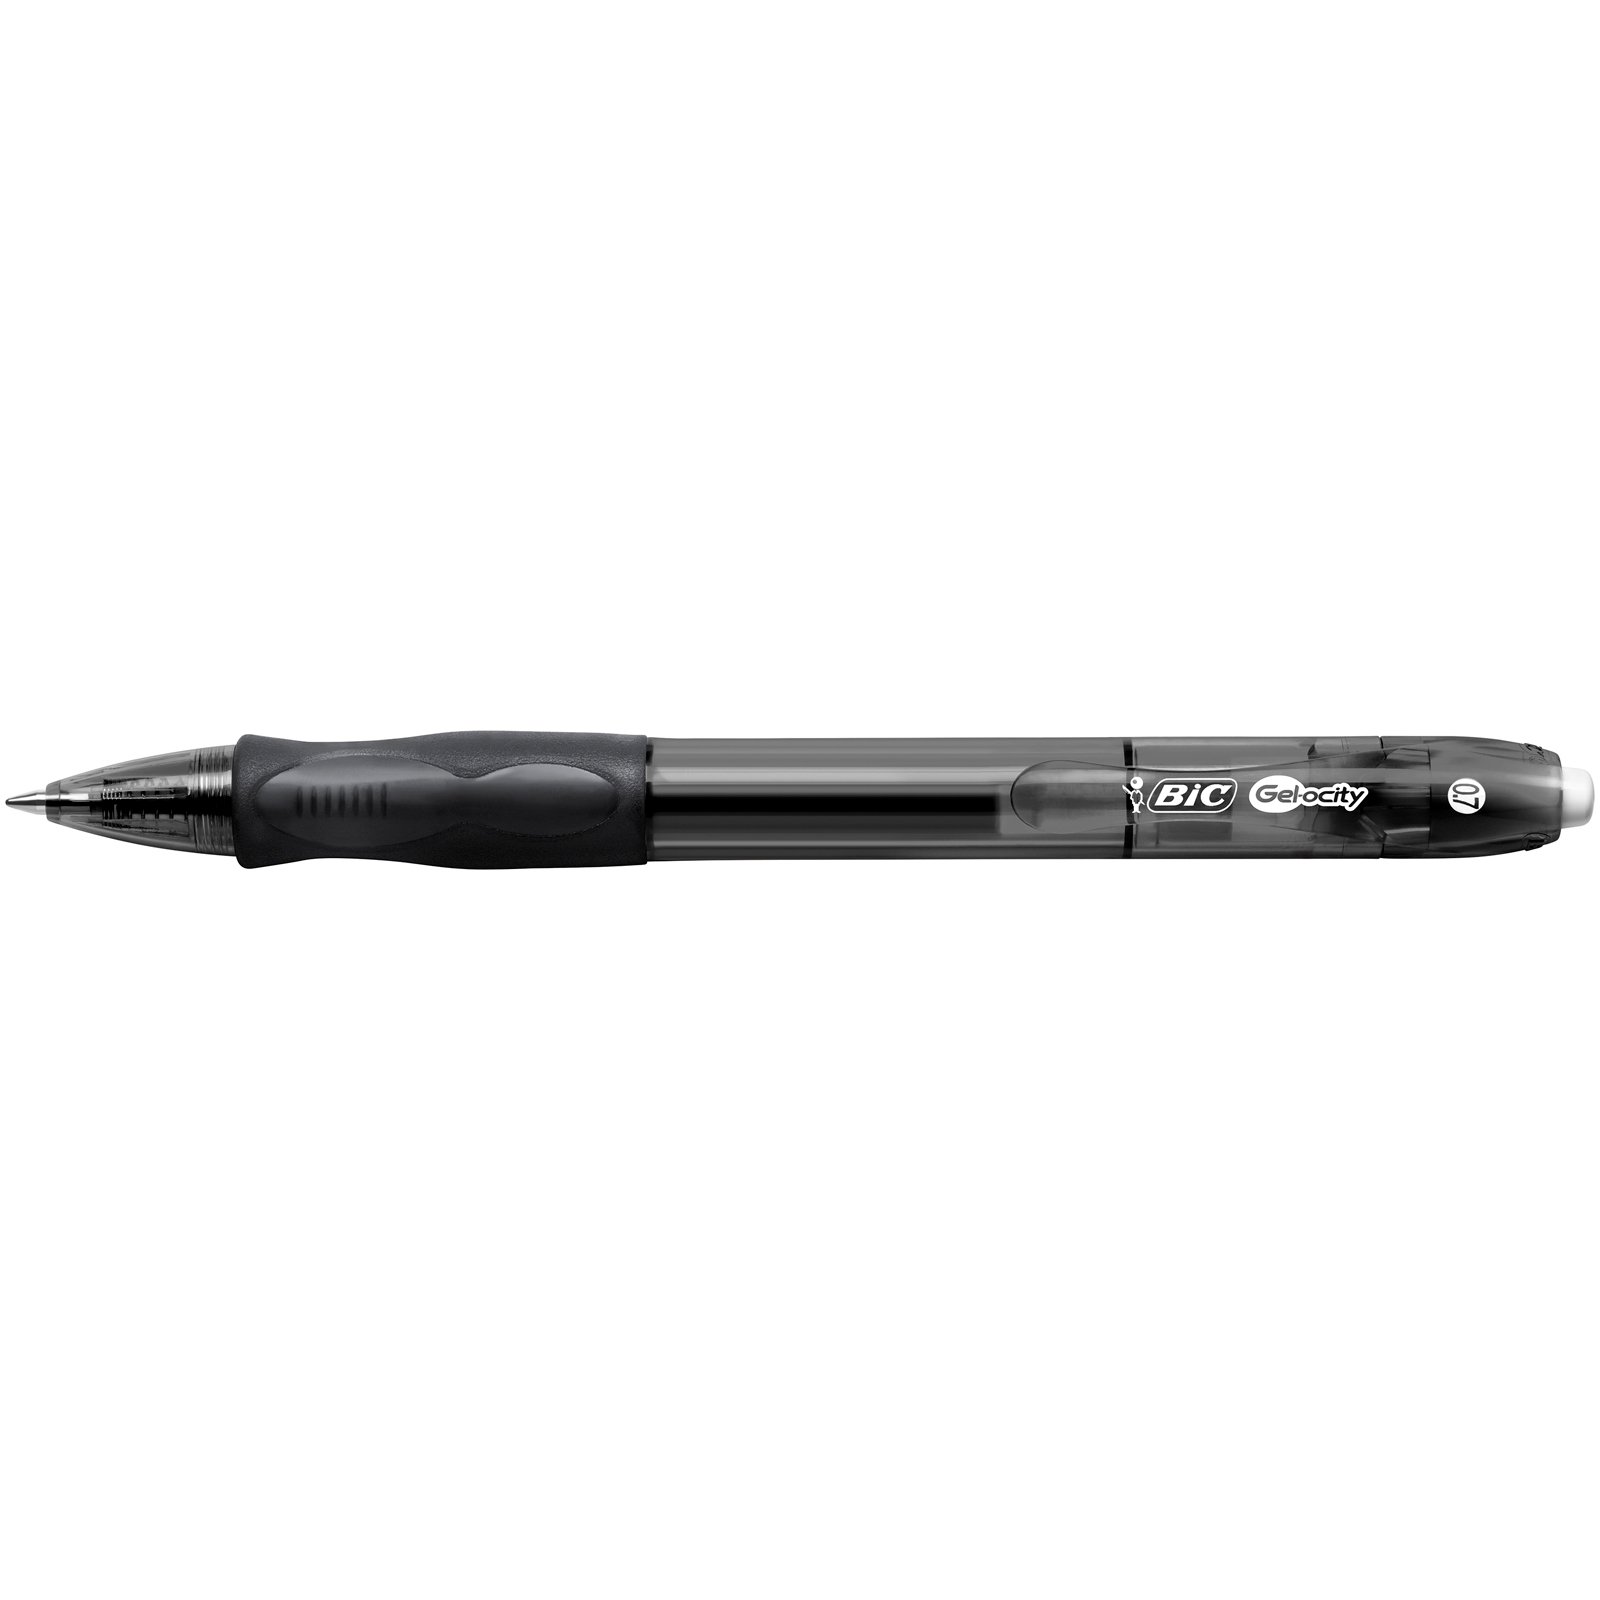 Ручка гелева BIC Gel-ocity Original, 0,35 мм, чорний, 1 шт. (829157) - фото 2